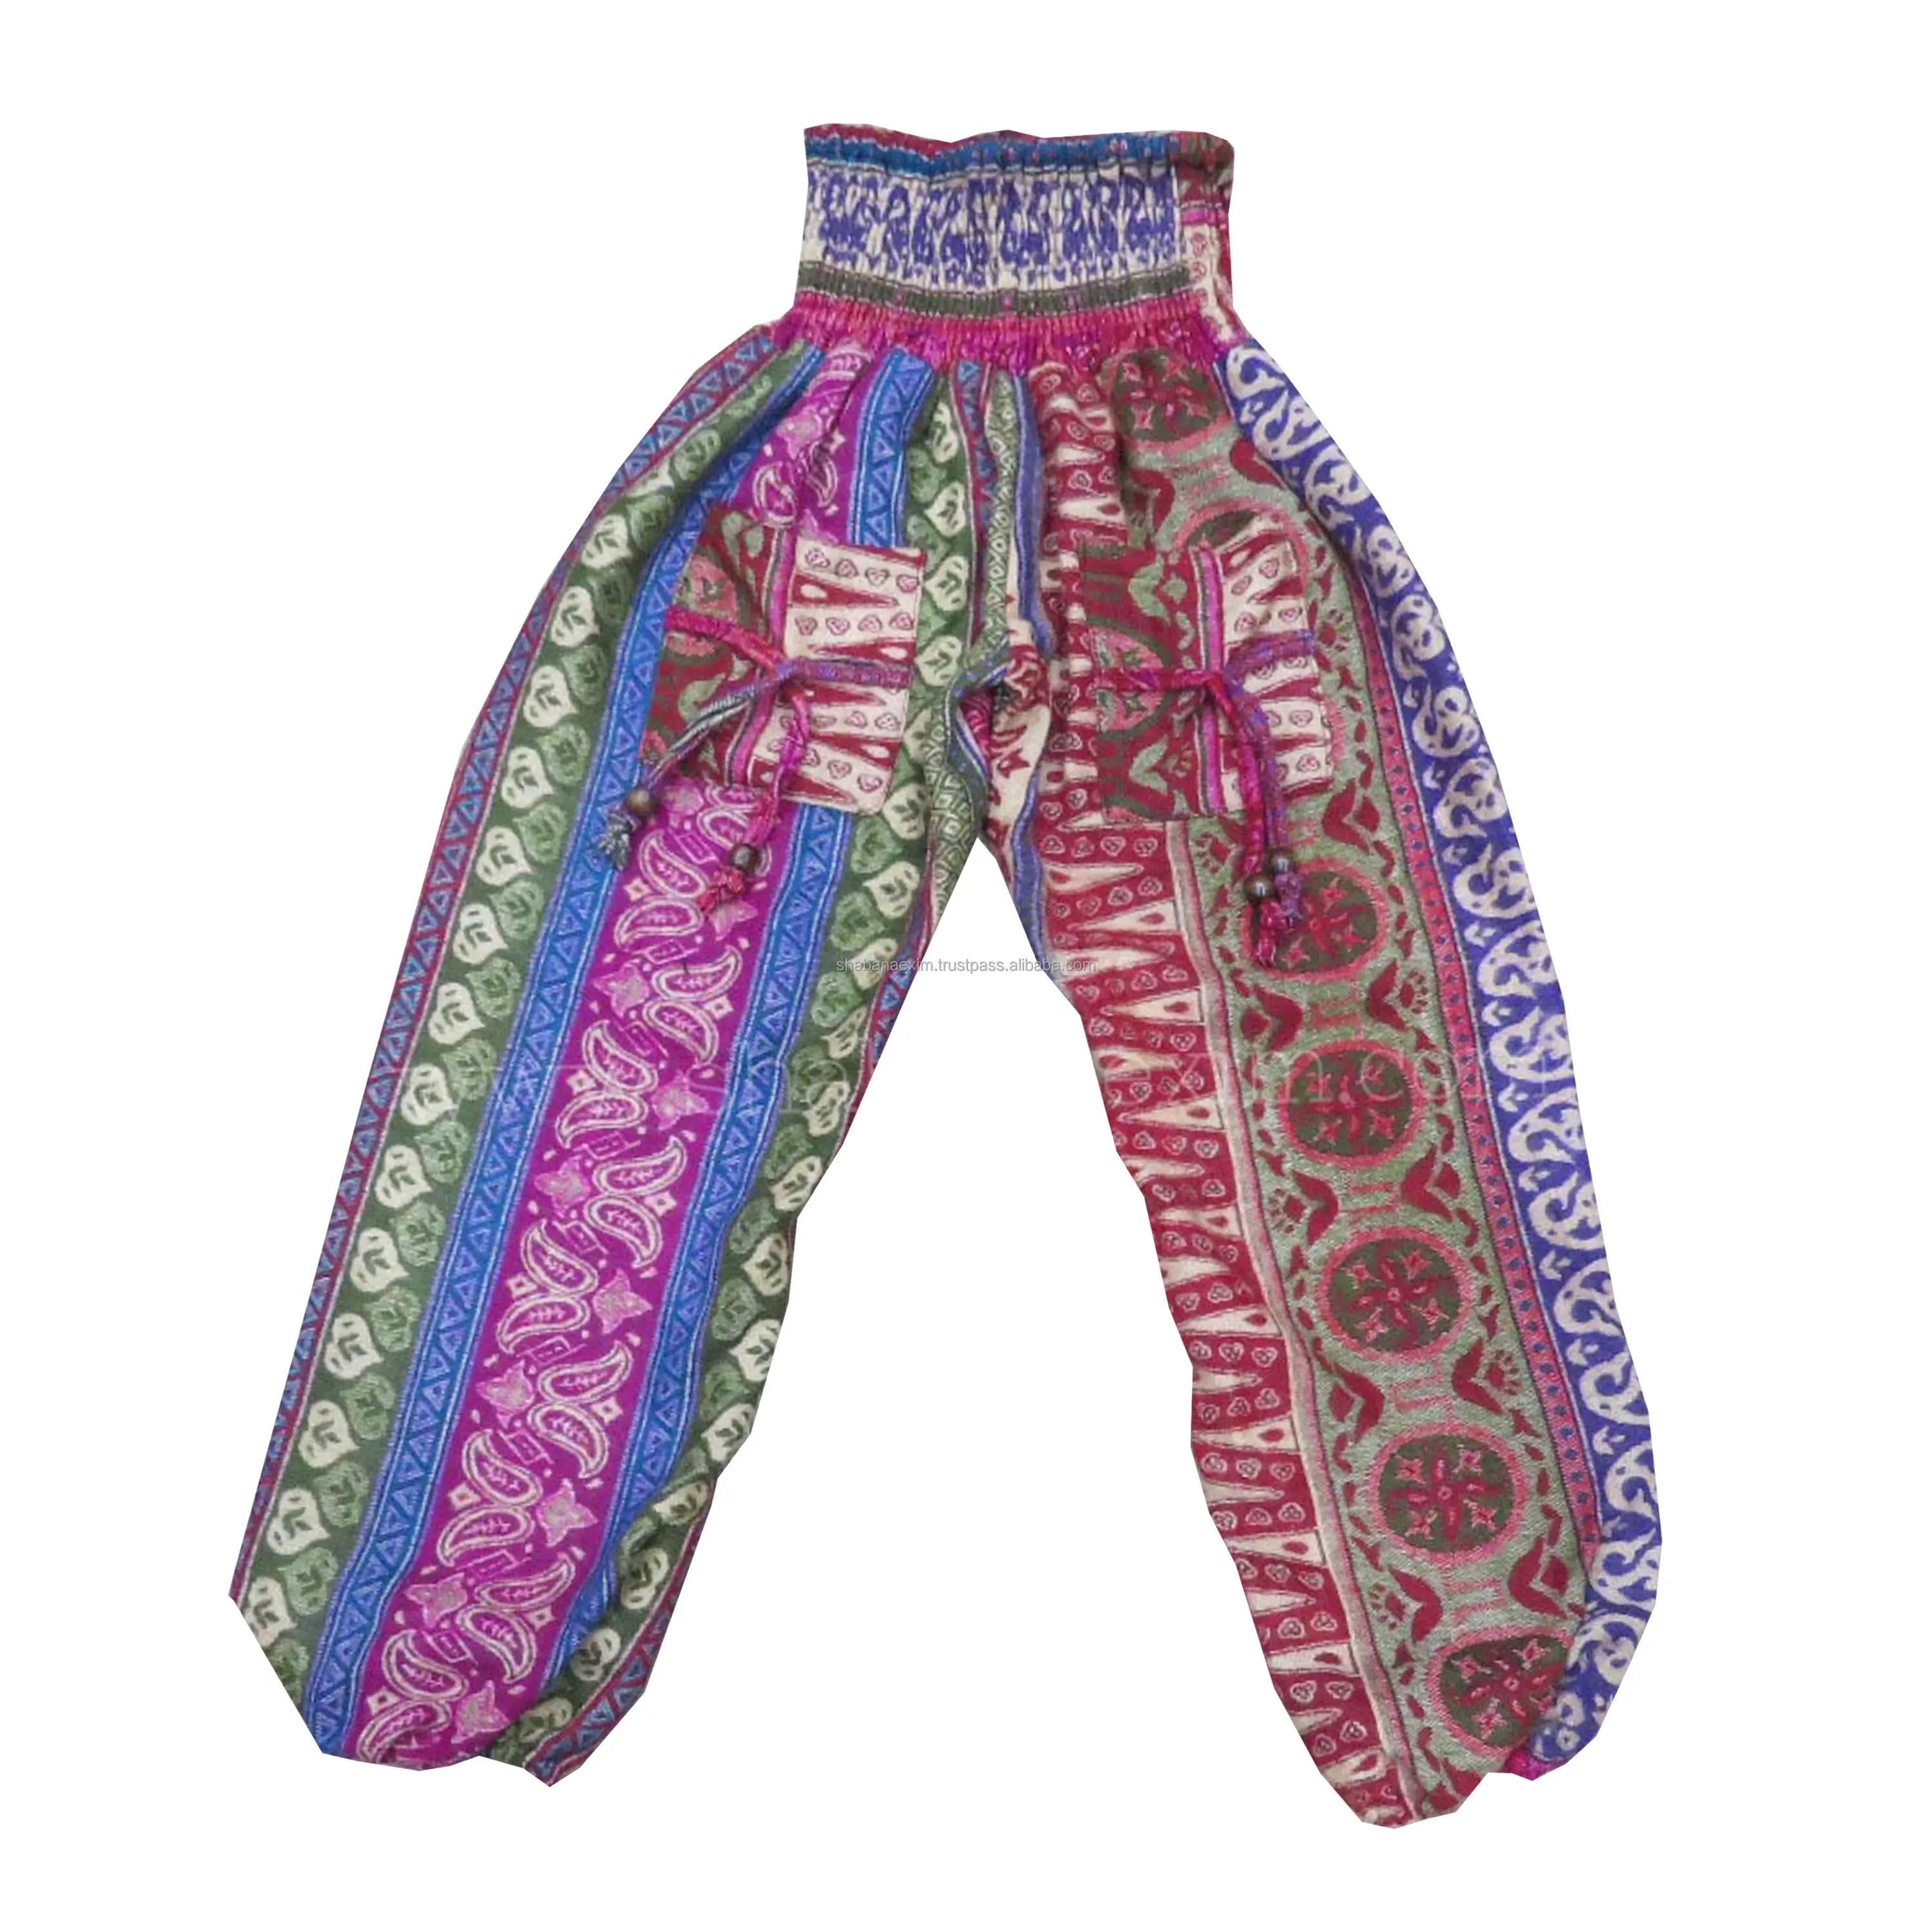 バギーハーレムパンツ男性アラジンハーレムパンツさまざまなパターンと色のポケット付き快適なバギー高品質